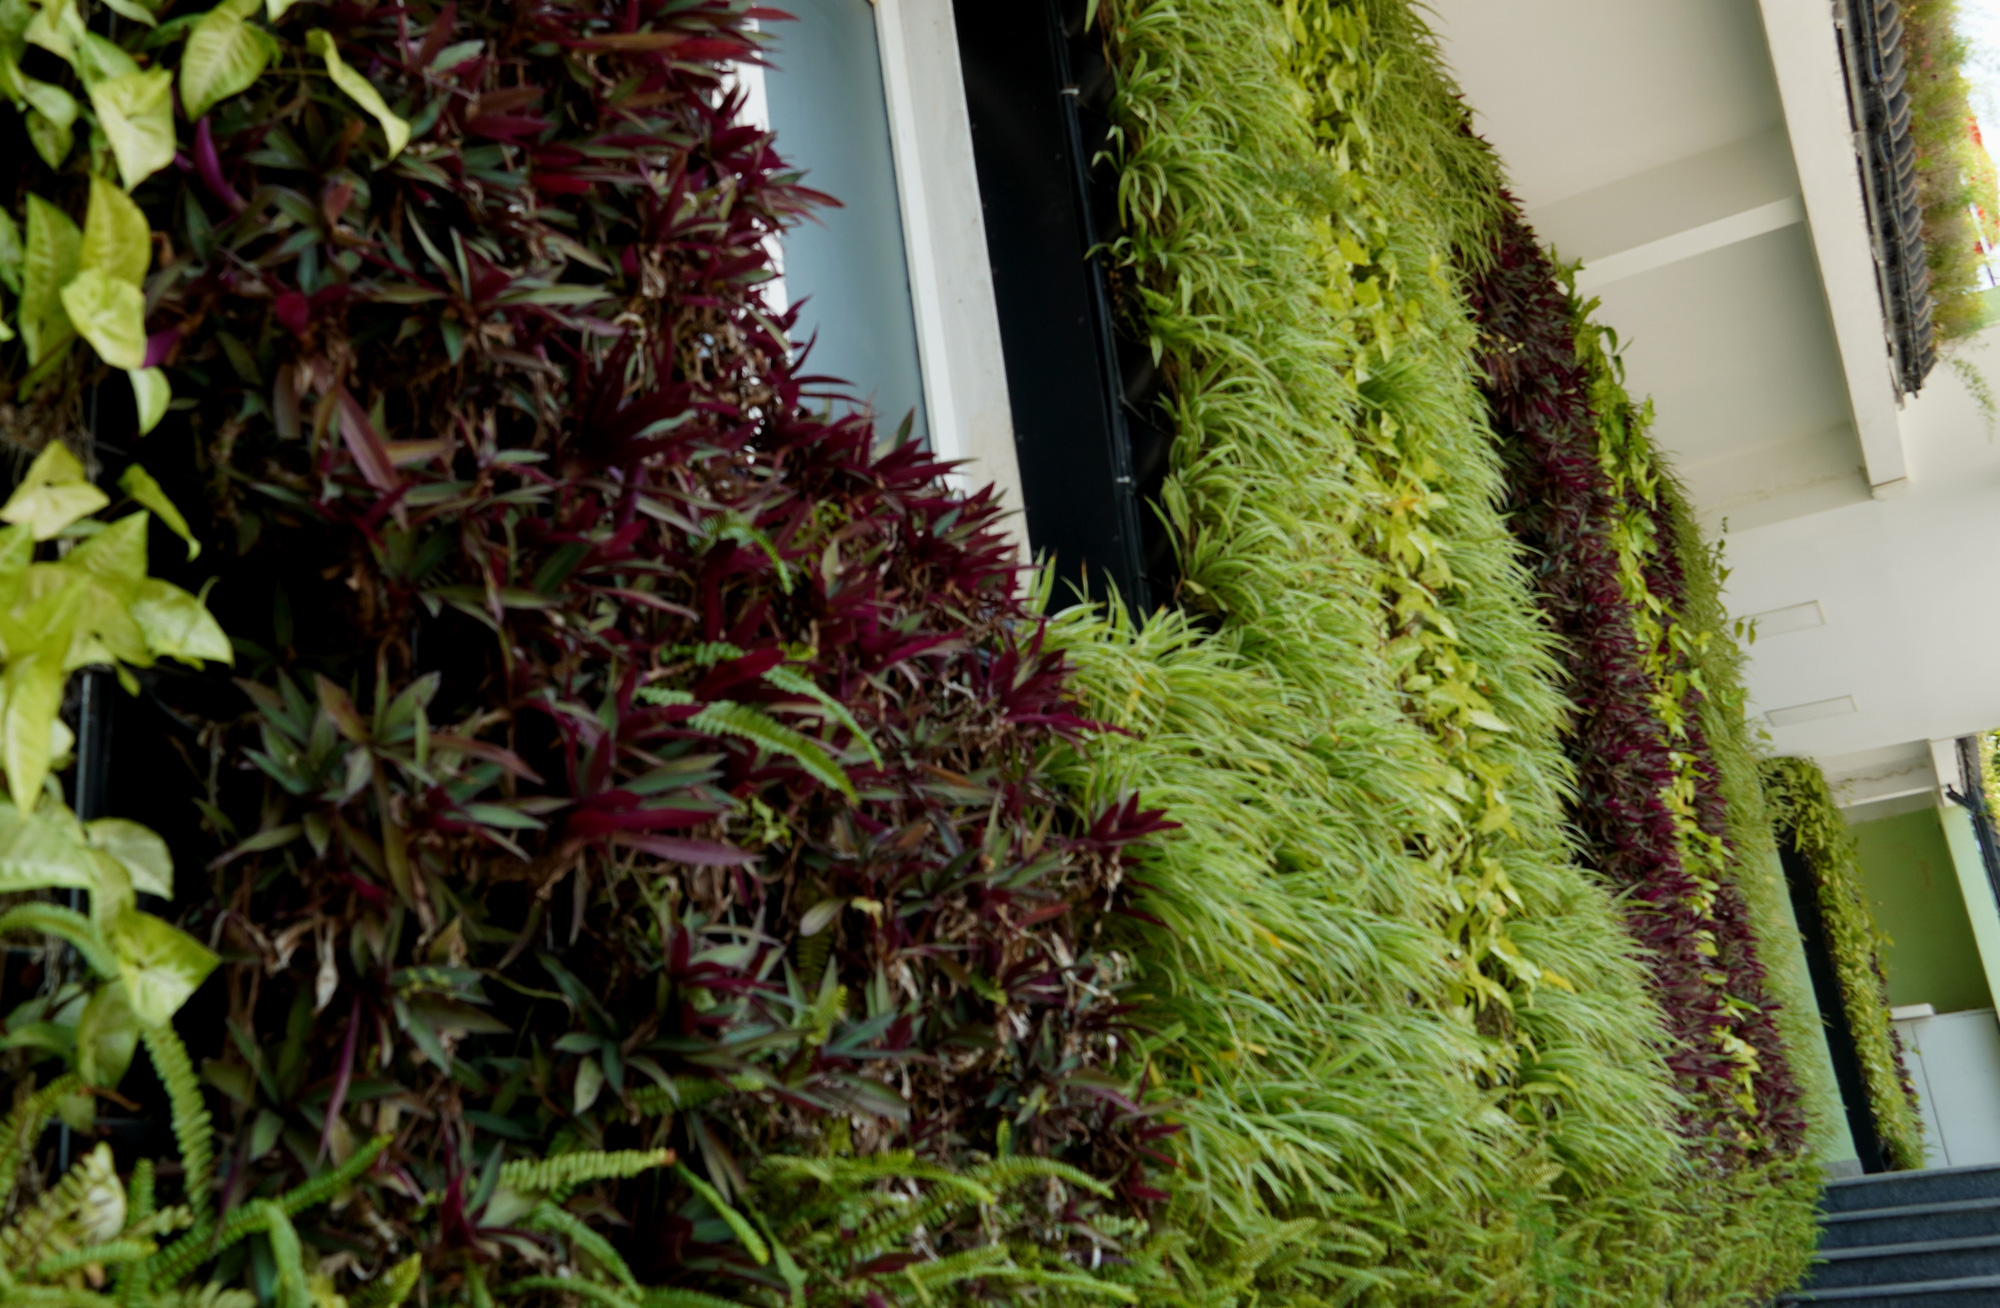 Thảm cây xanh tươi tốt trên bức tường dù ít phải dụng công chăm sóc - Ảnh: QUỐC NAM 